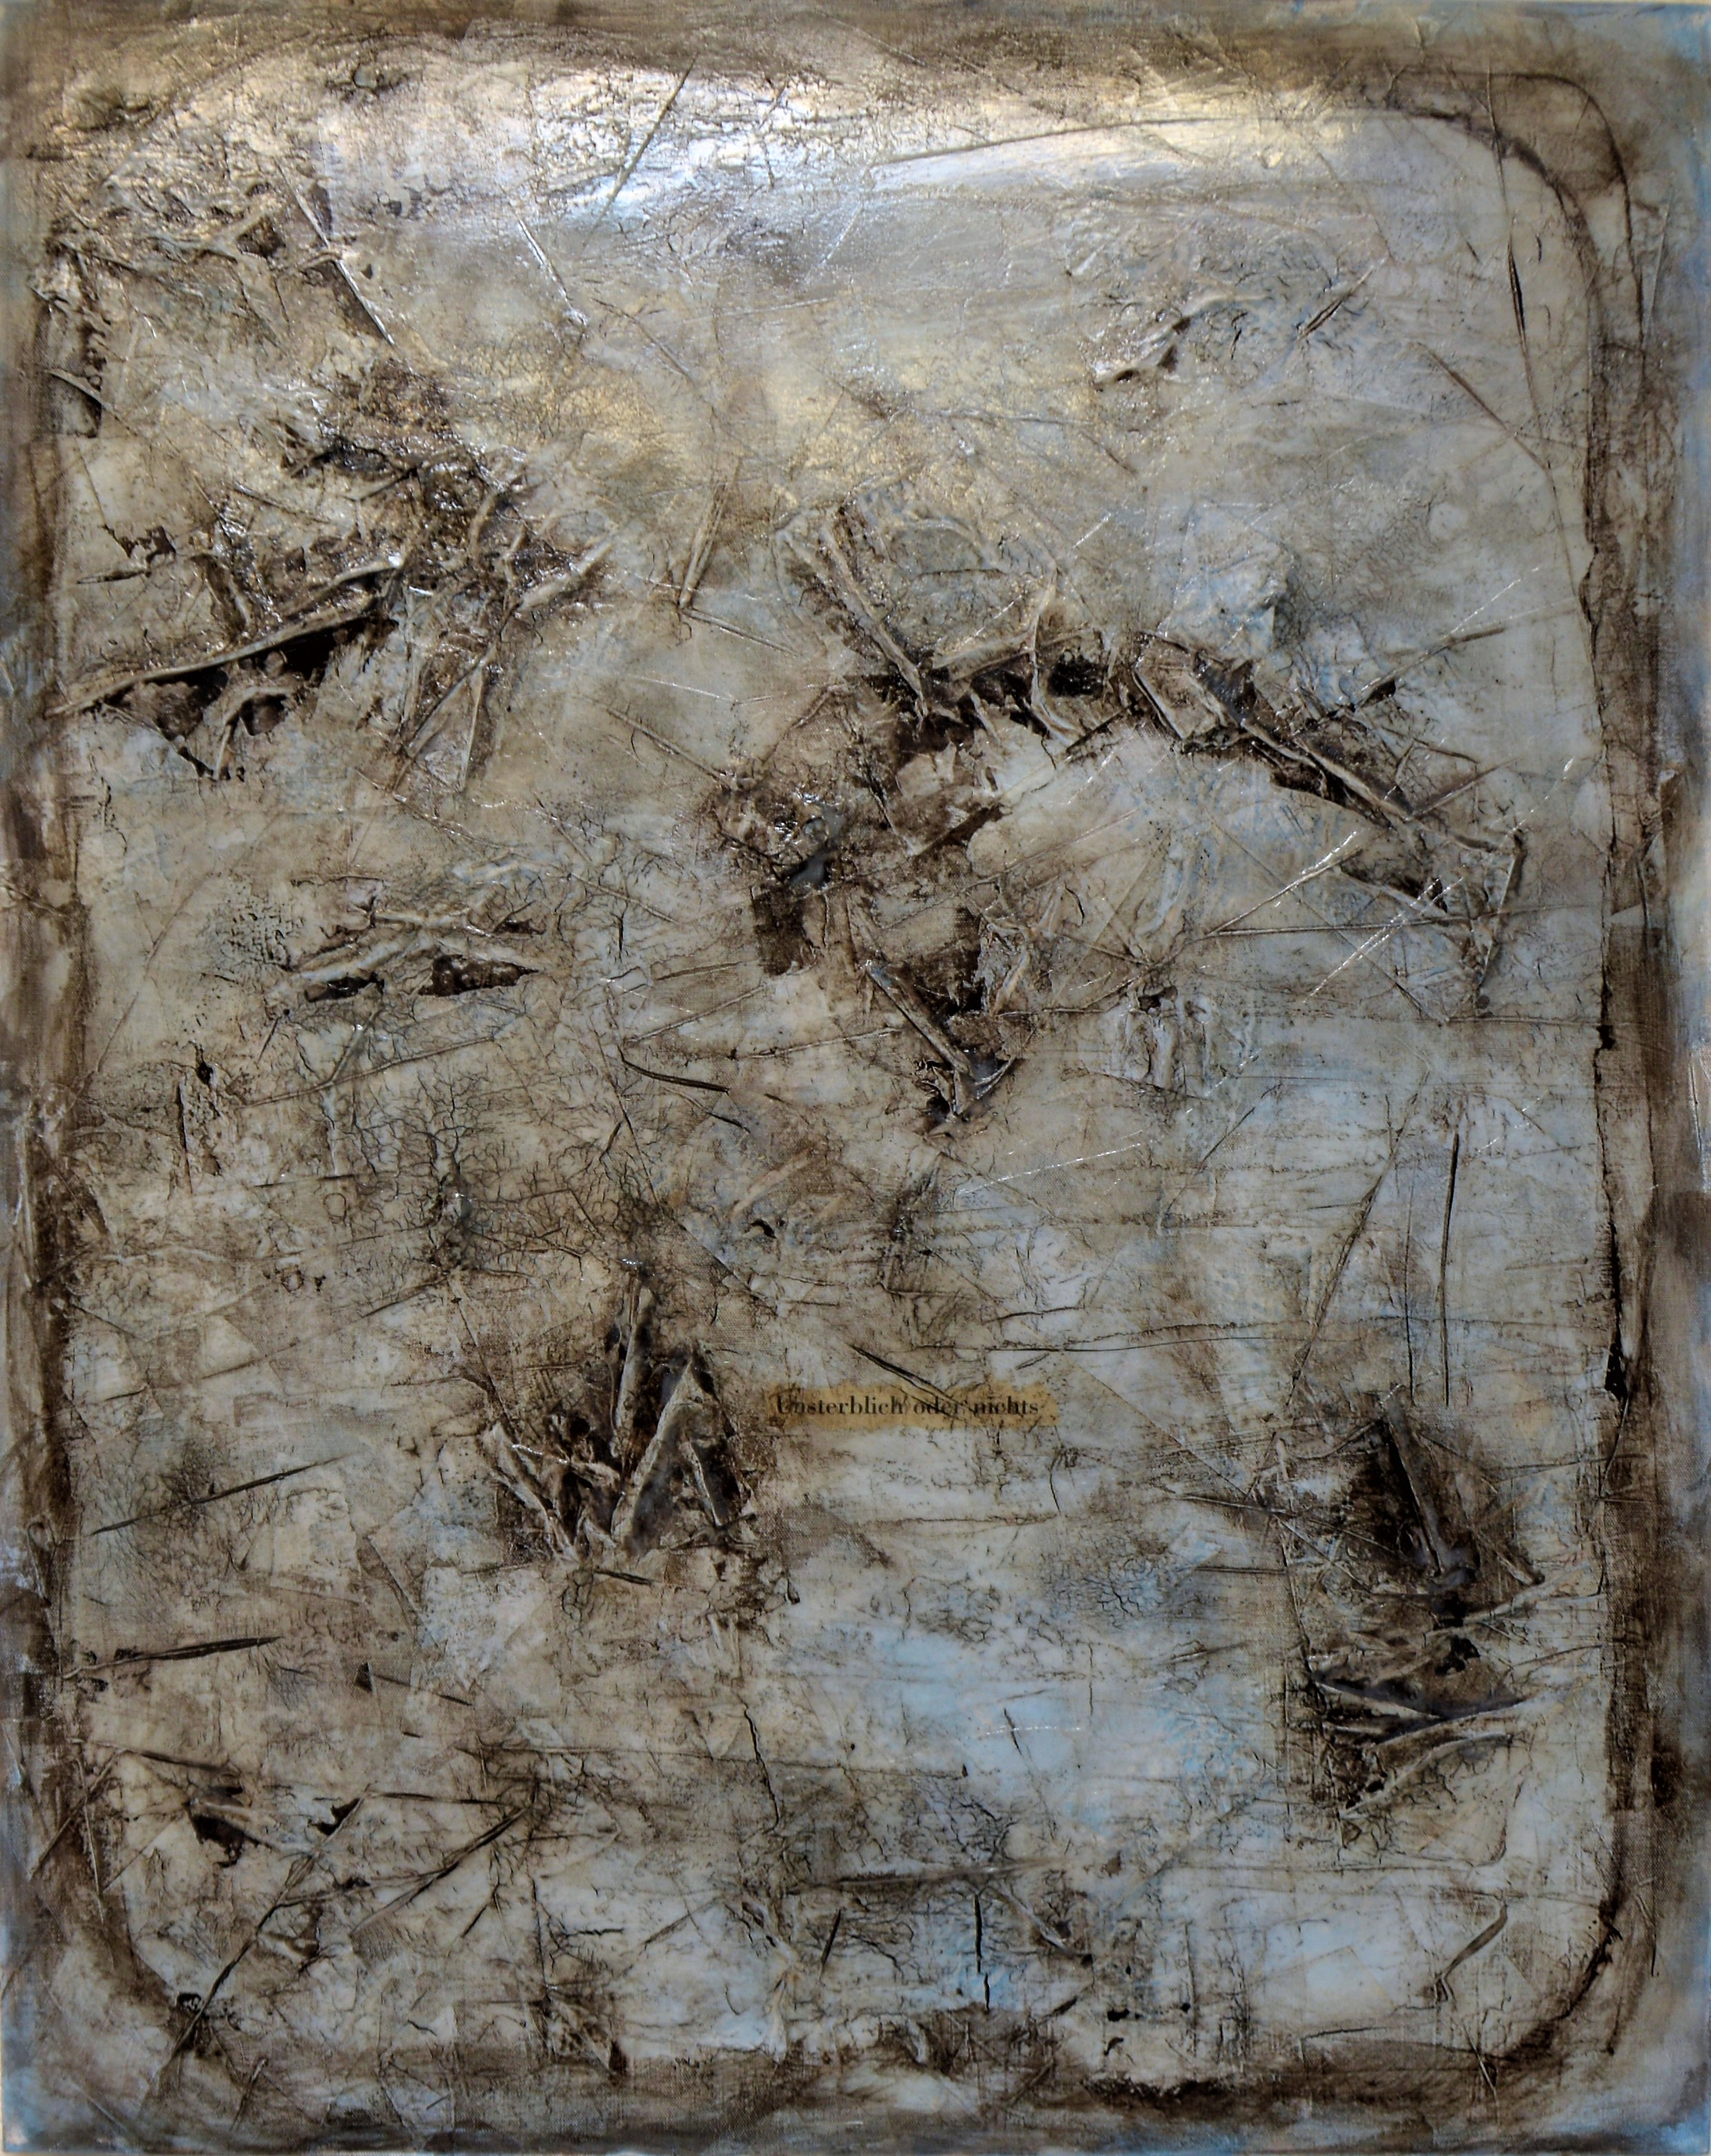 "oder nichts", 2015, acryl, papier, kunstharz auf leinwand, 100 x 80 x 4 cm